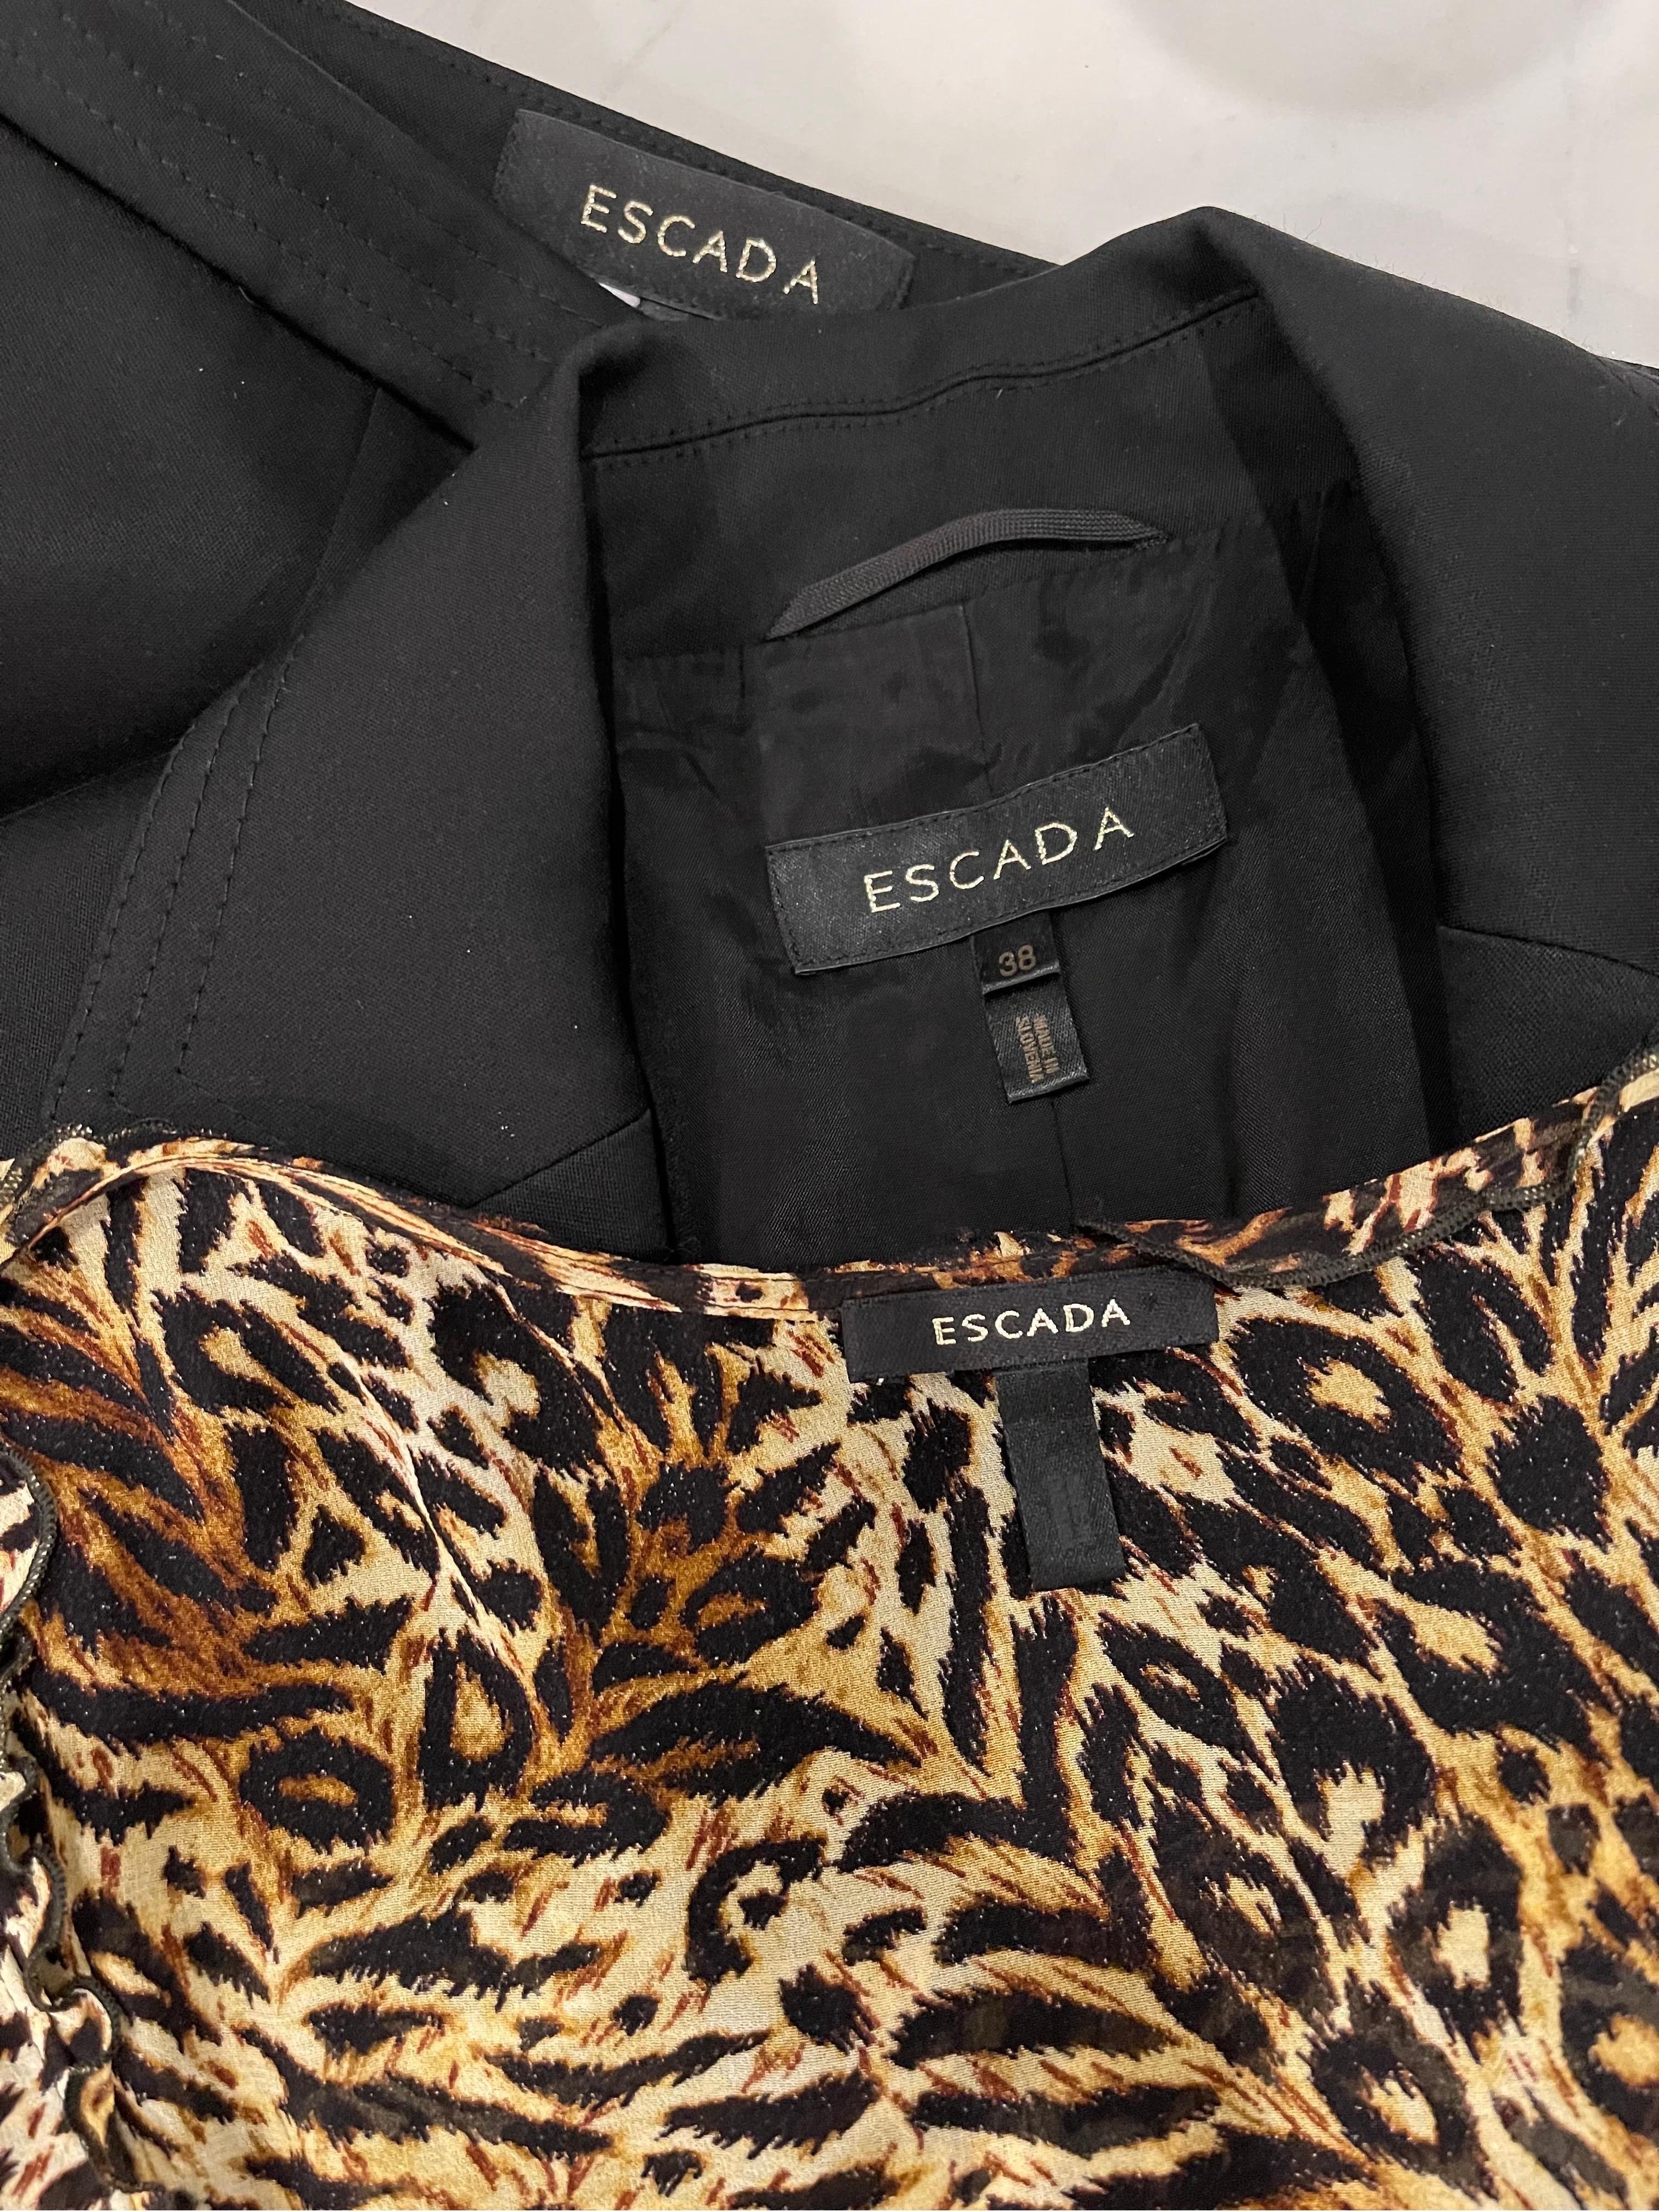 Superbe ensemble 3 pièces vintage ESCADA du début des années 2000 ! Il s'agit d'une veste noire ajustée avec une doublure en léopard et un lien en mousseline de soie léopard à la taille. Chemisier sans manches en mousseline de soie léopard. Les